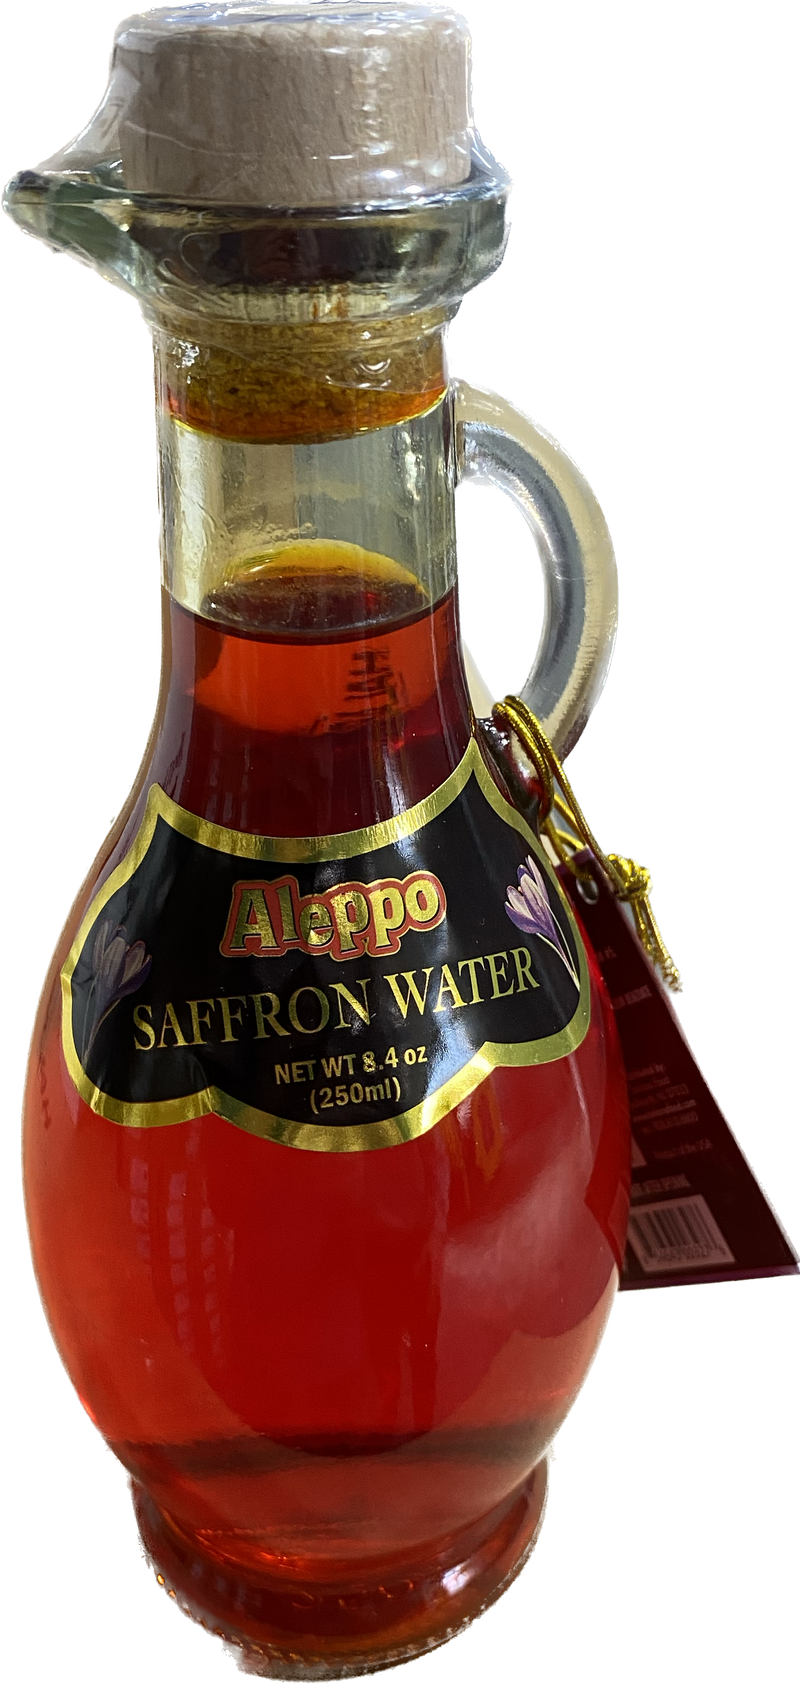 Aleppo Saffron Water (8.4oz) - Papaya Express